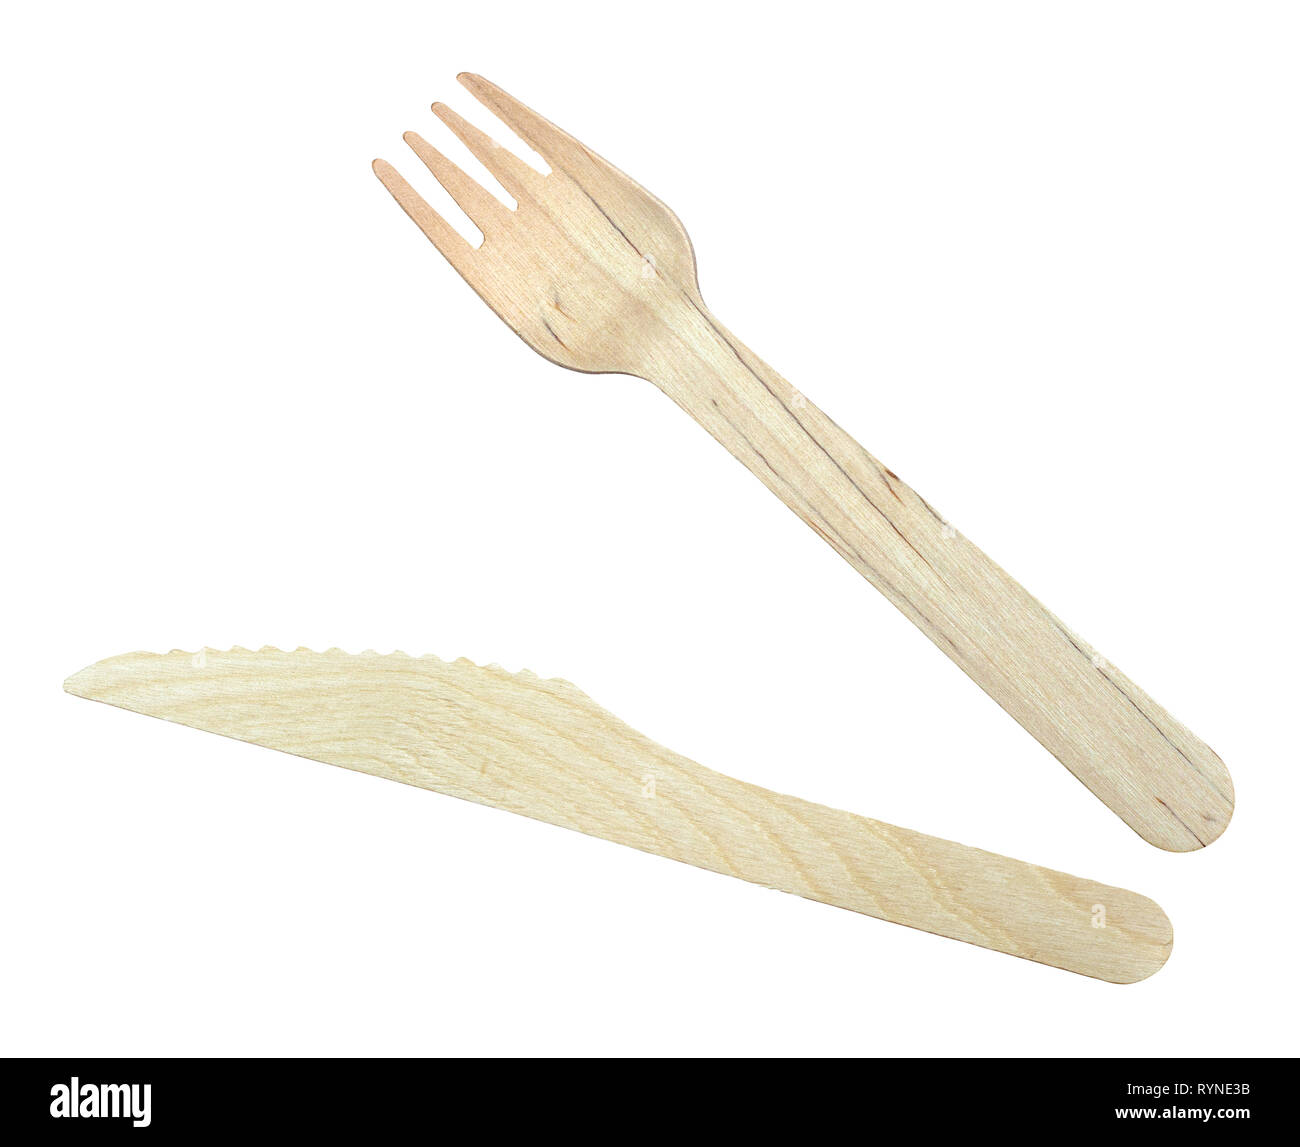 Isolierte Holz- Messer und Gabel für Take-out Essen auf weißem Hintergrund Stockfoto